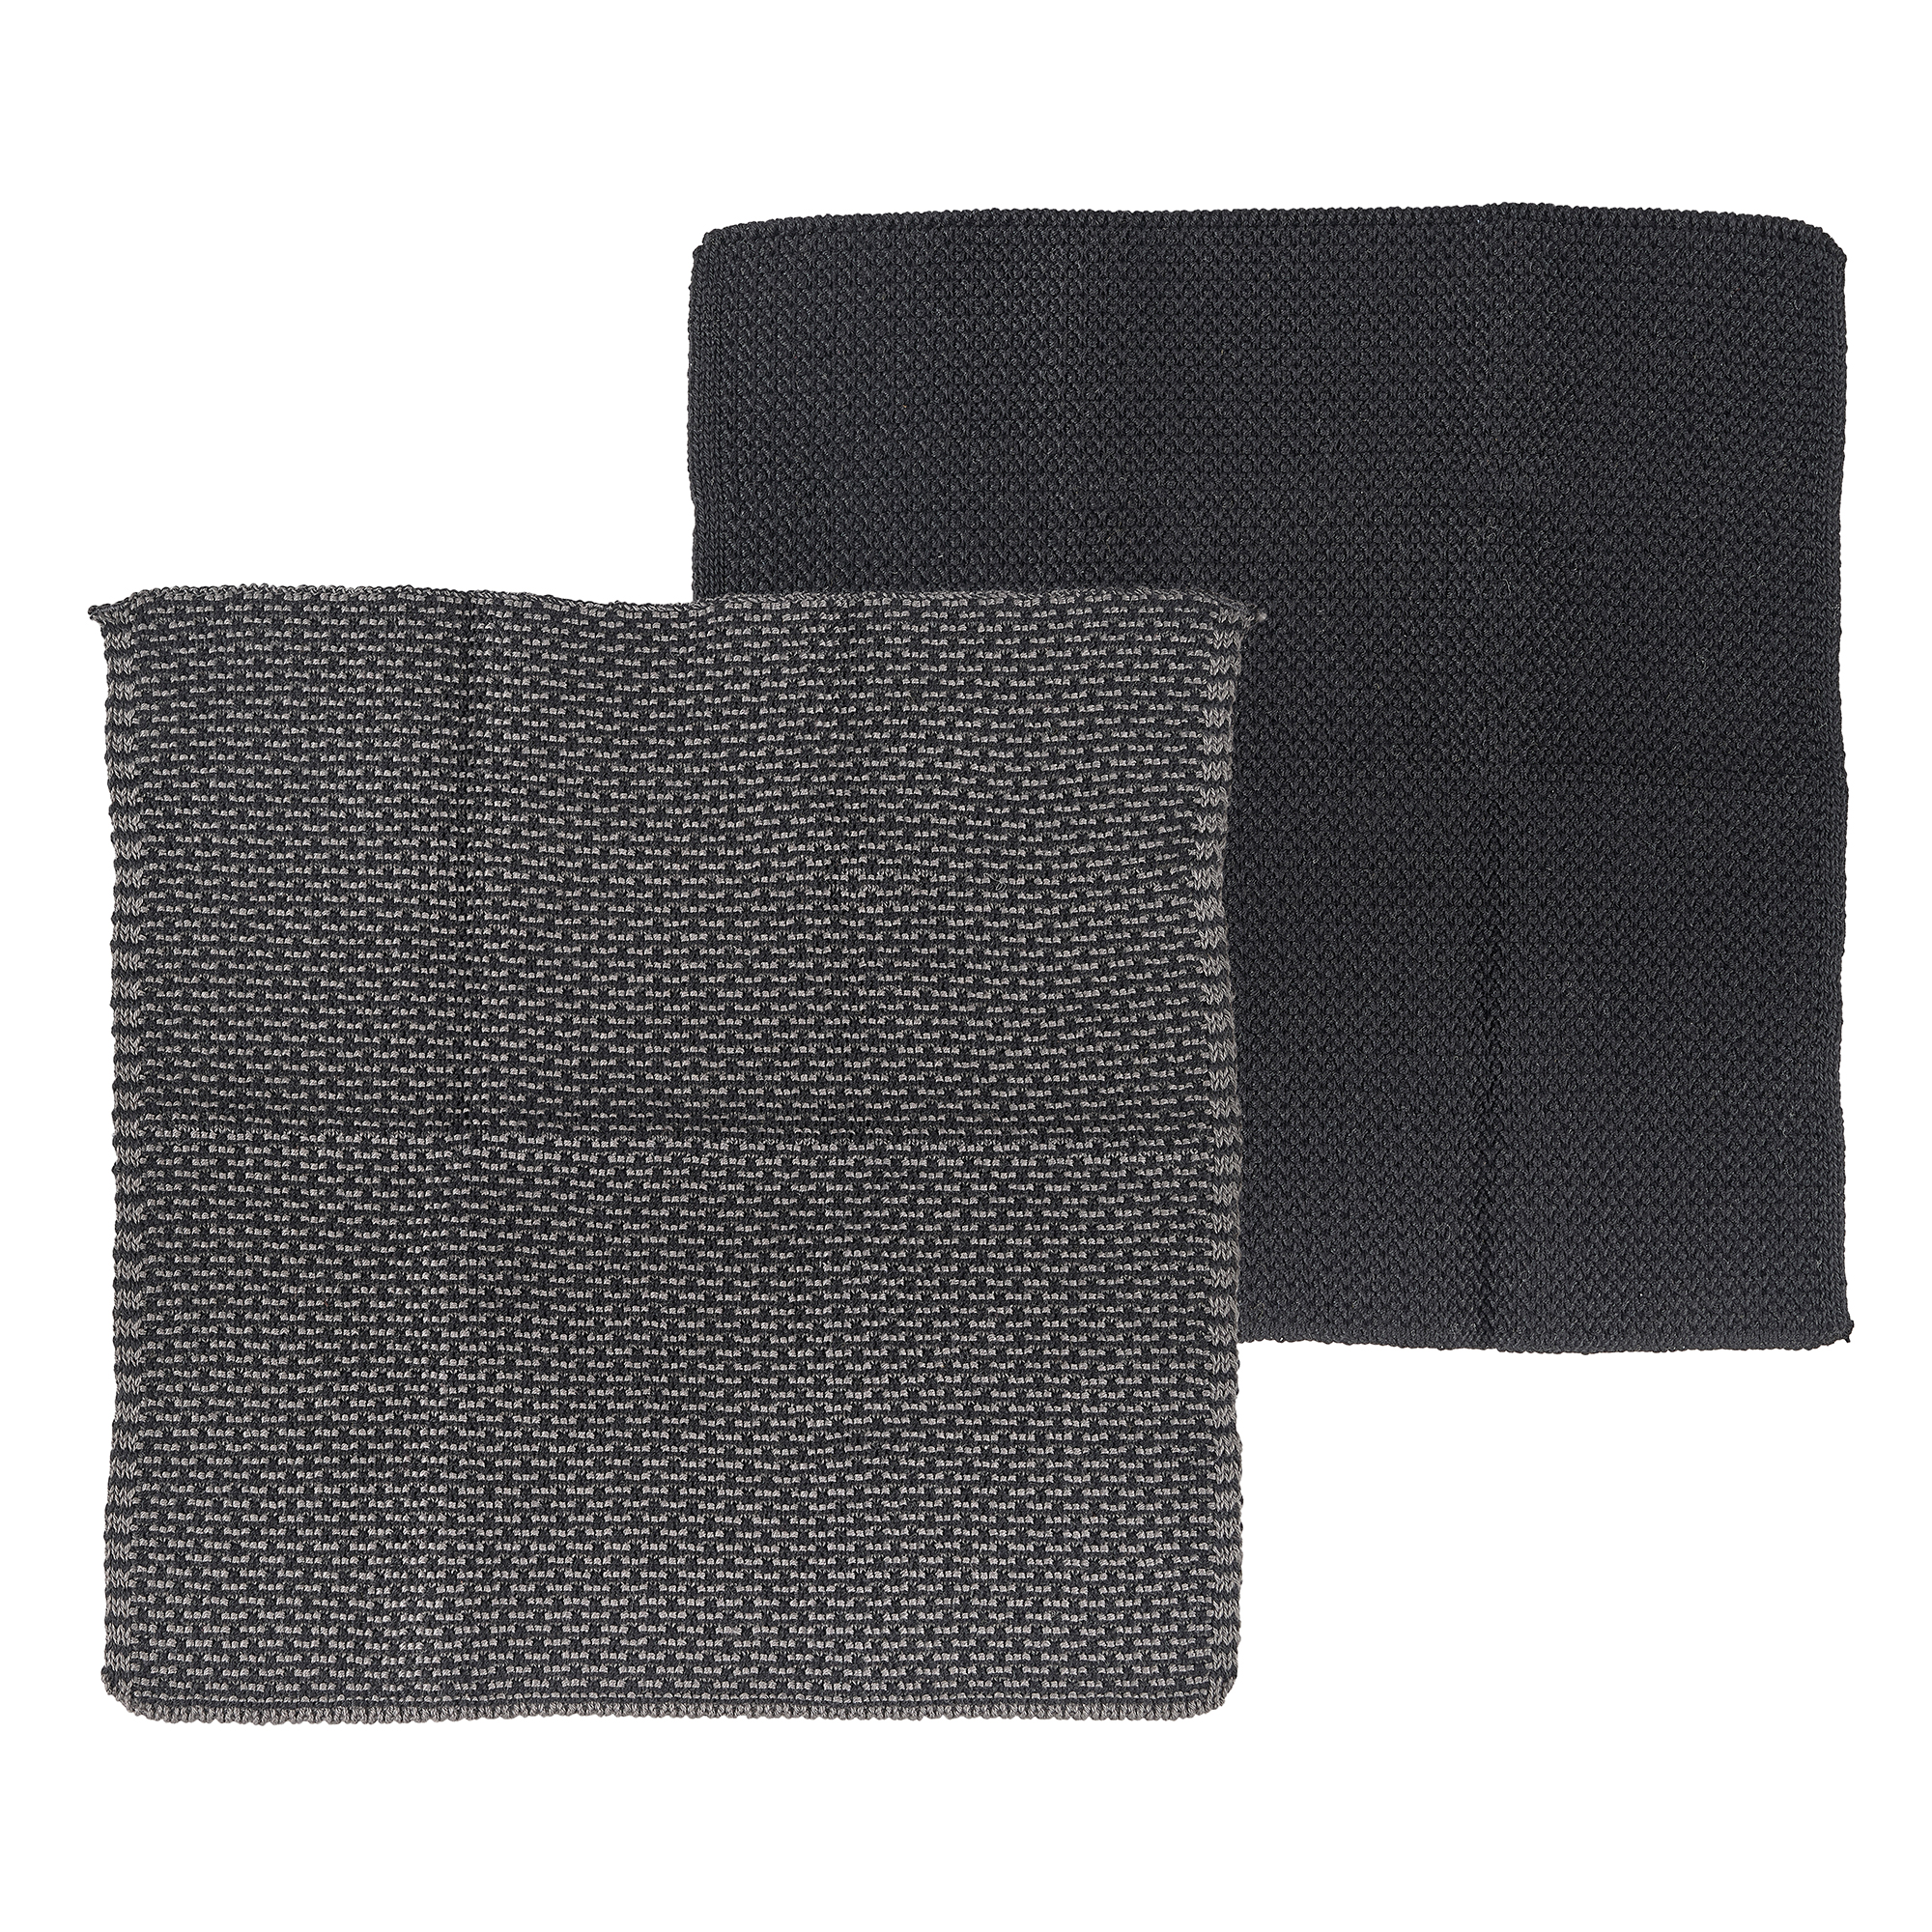 Södahl Karklude Mix Kitchen Knit, Black/Grey